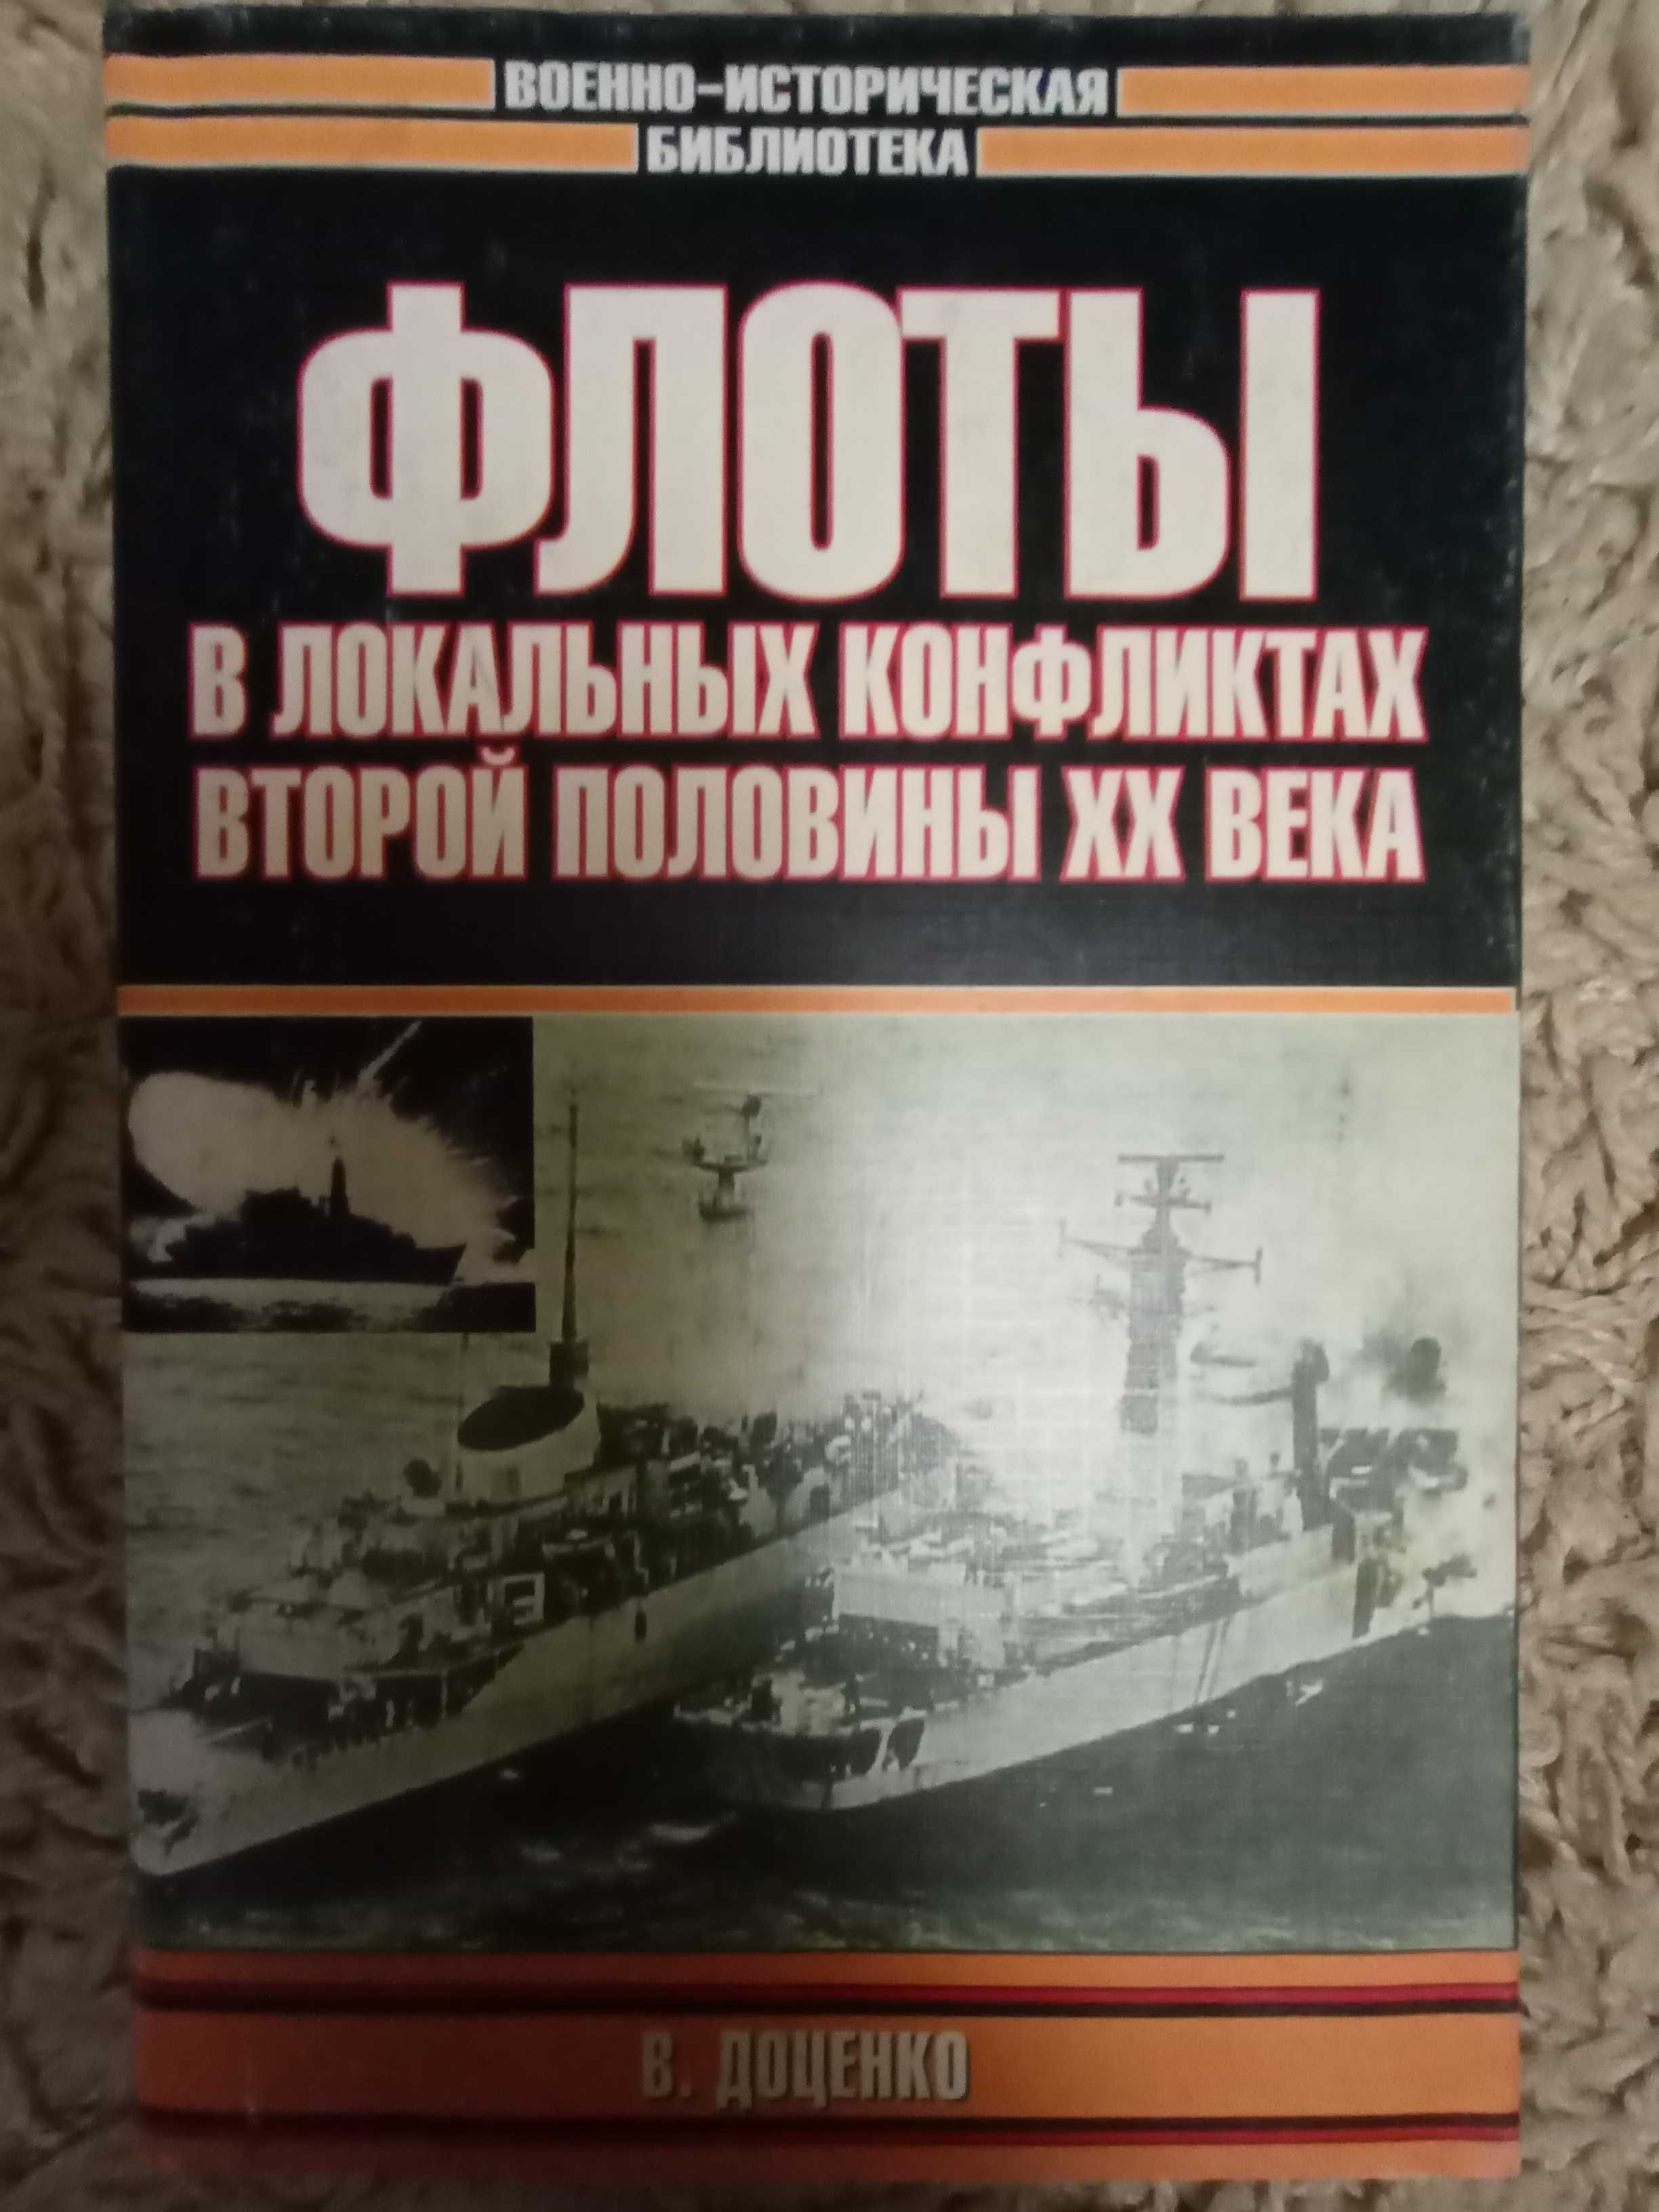 Доценко В. Флоты в локальных конфликтах второй половины XX века